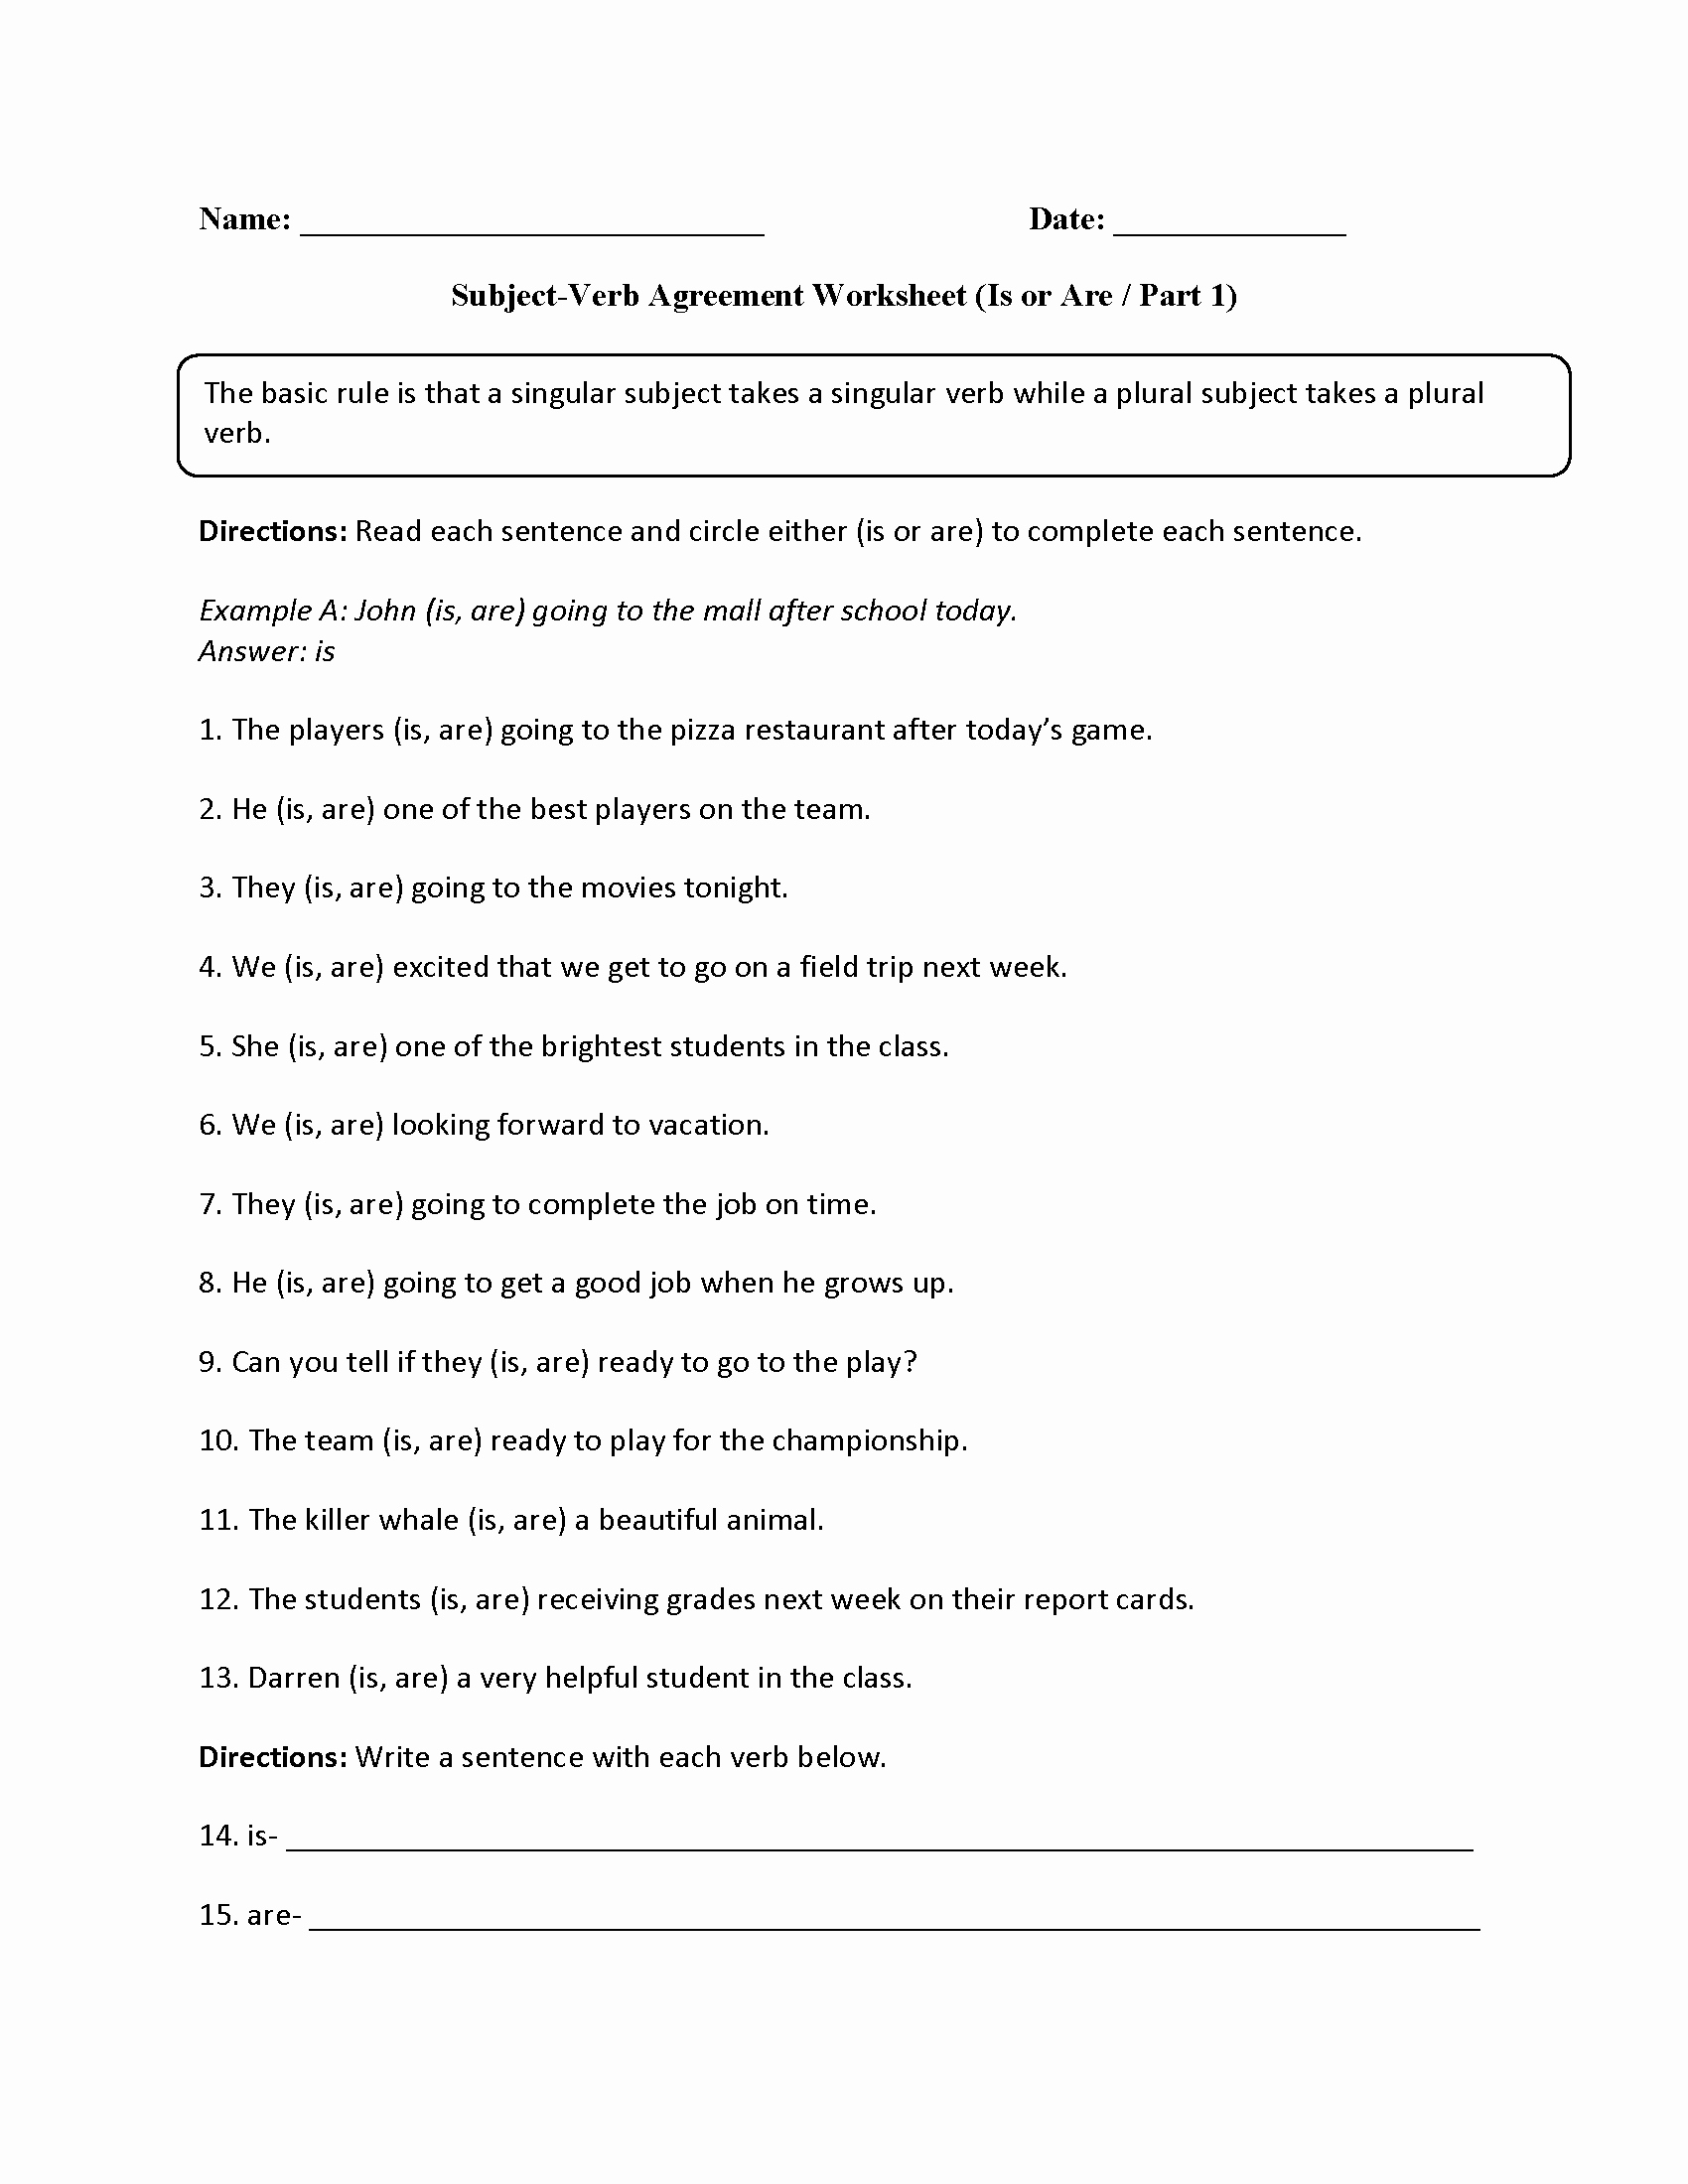 Subject Verb Agreement Worksheet Lovely Practicing is or are Subject Verb Agreement Worksheet